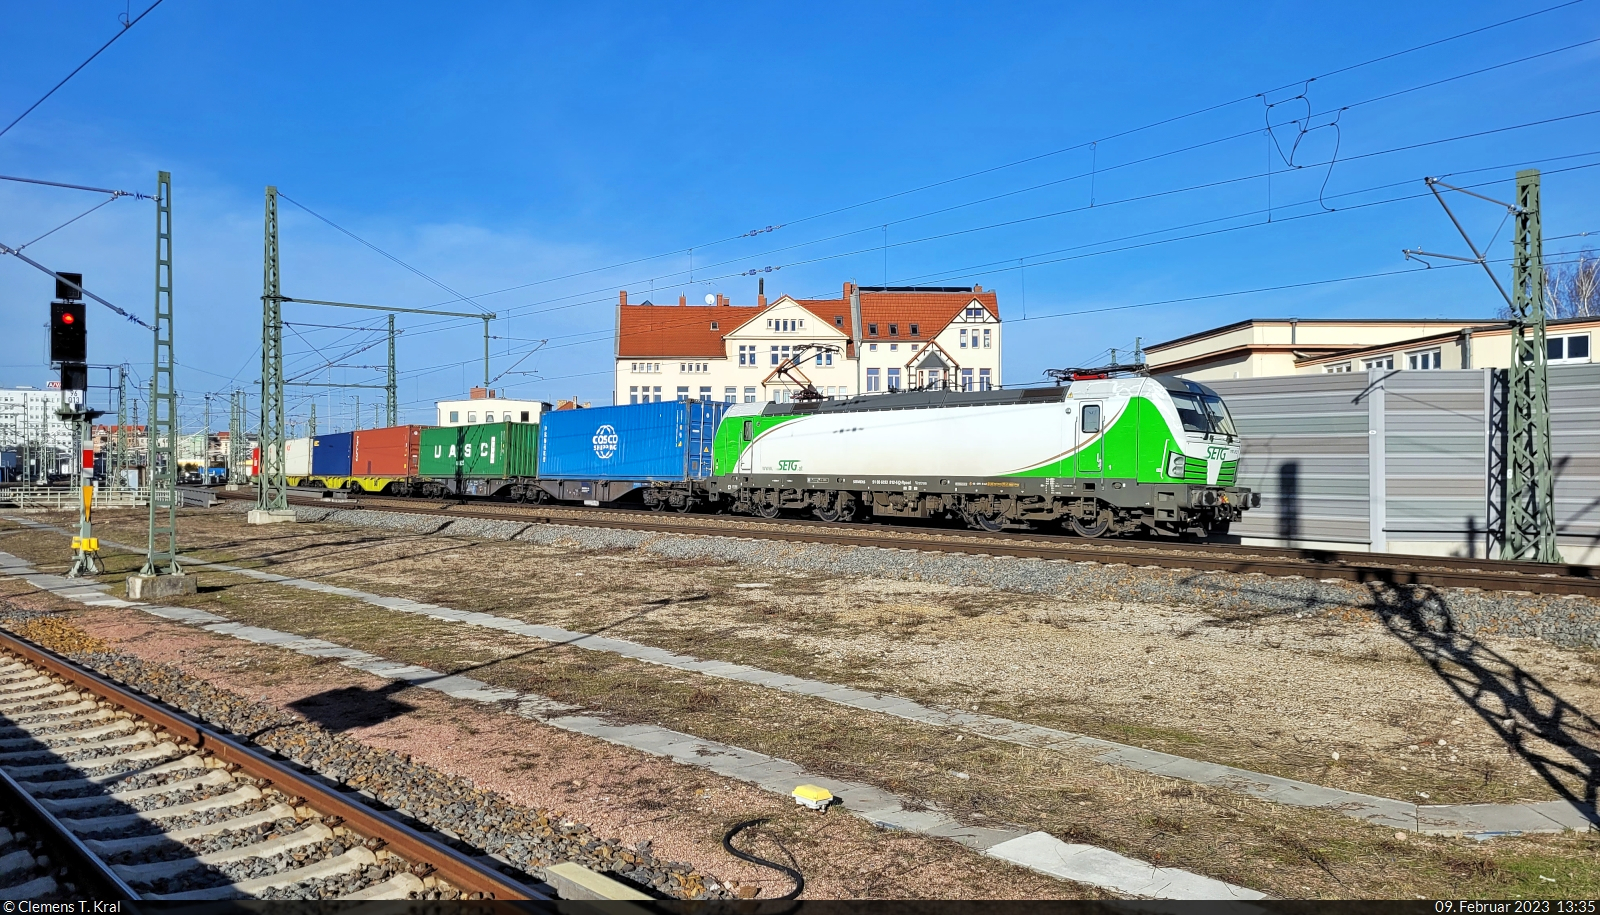 Containerzug mit 193 812-5 (Siemens Vectron) passiert Halle(Saale)Hbf in südlicher Richtung.
Aufgenommen vom Bahnsteig 12/13.

🧰 Railpool GmbH, vermietet an die Salzburger Eisenbahn Transportlogistik GmbH (SETG)
🕓 9.2.2023 | 13:35 Uhr